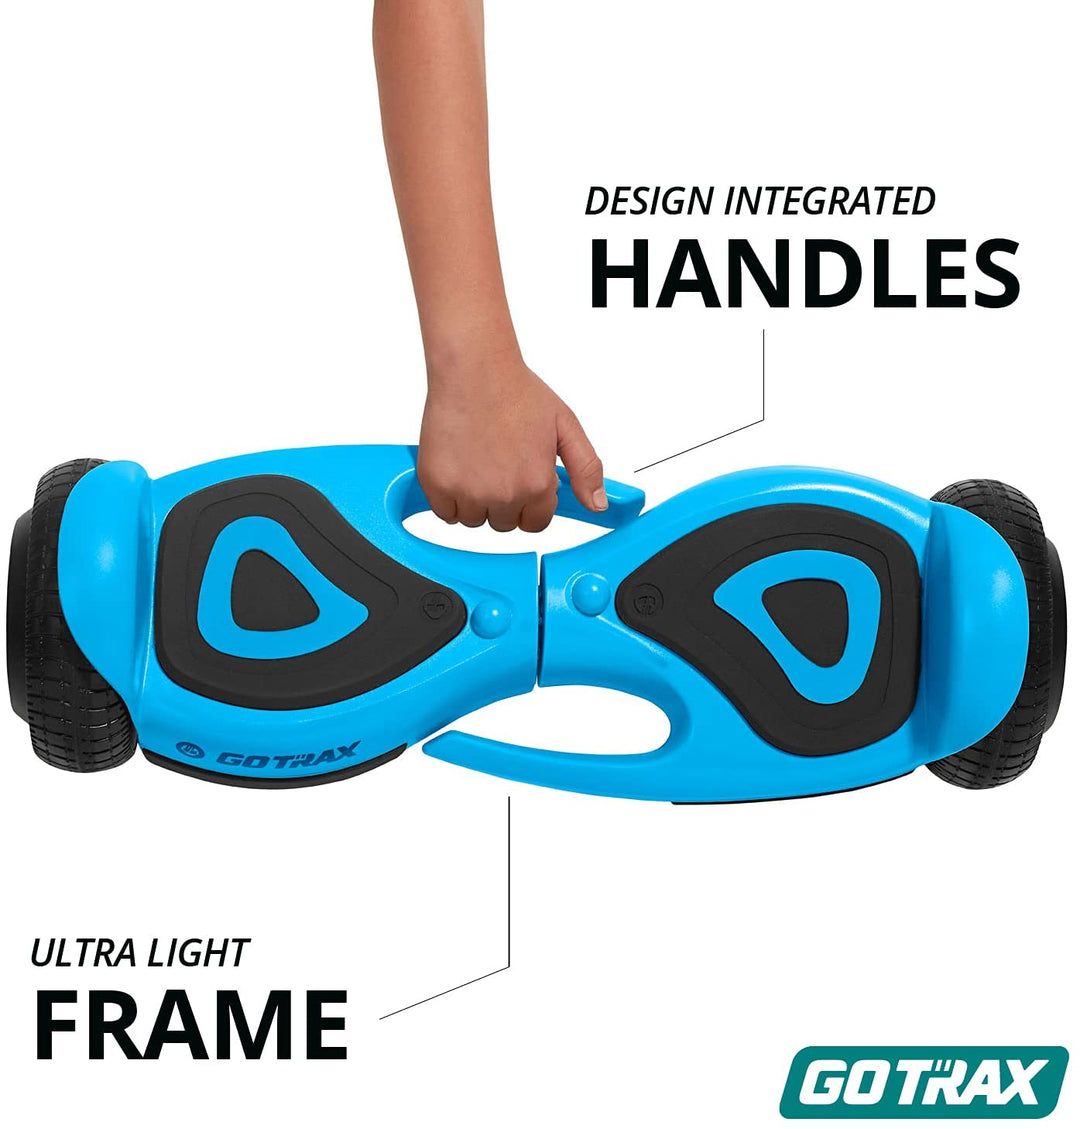 Gotrax SRX Mini 6.5" Kids Hoverboard 6.2Mph丨3.1Miles Range